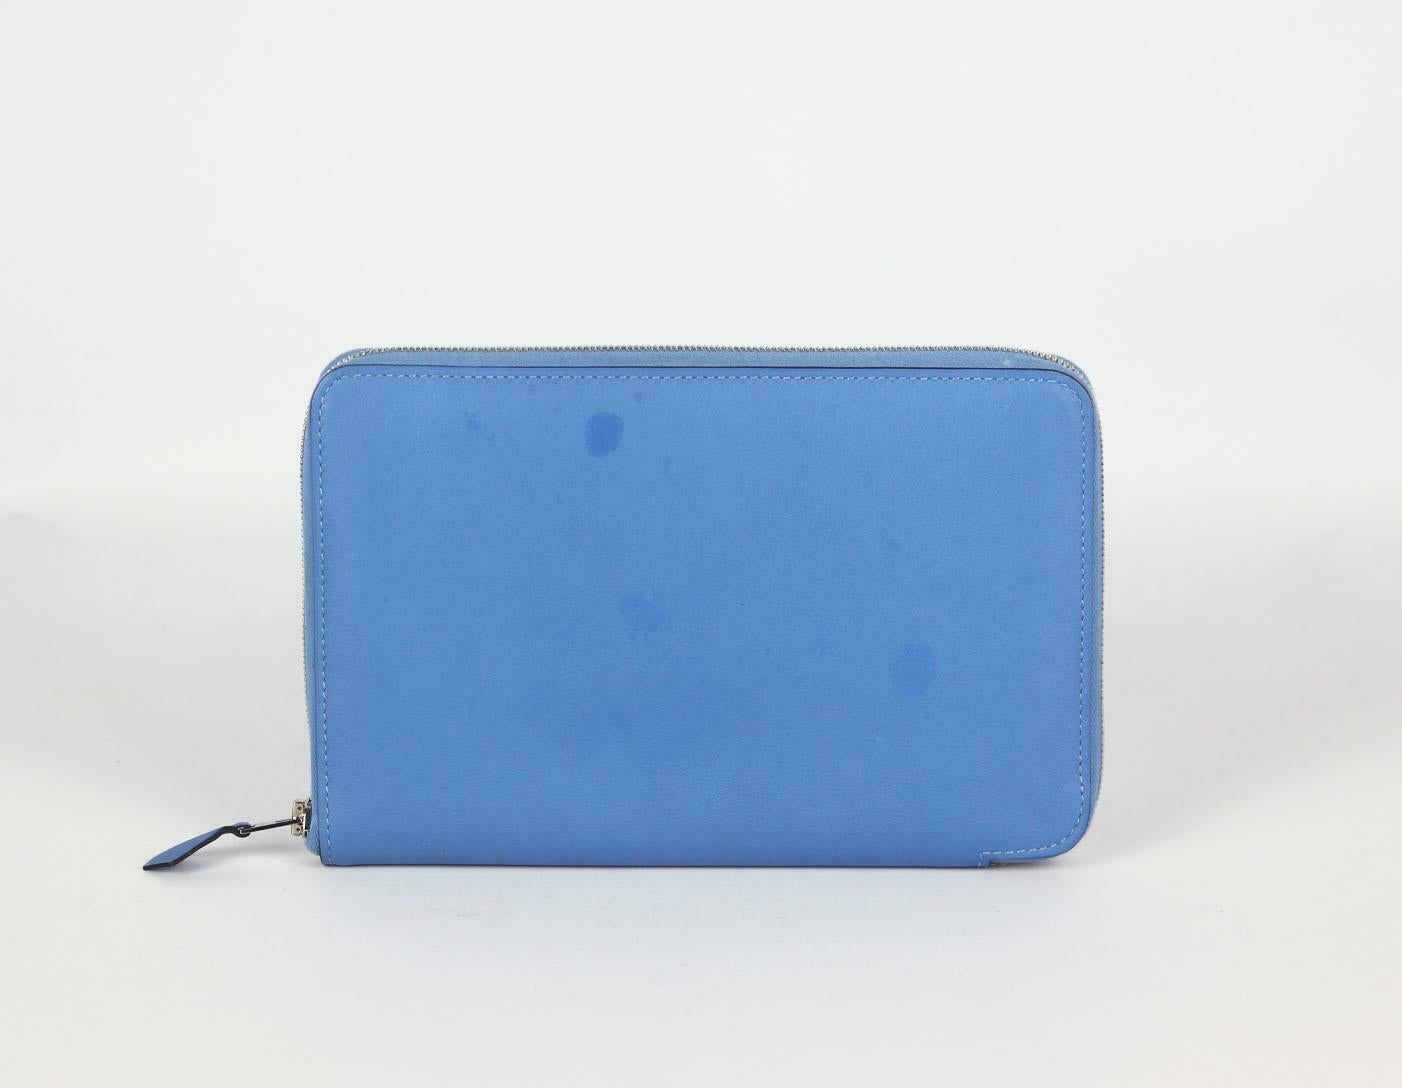 Fabriqué en France, ce portefeuille Hermès 'Azap' a été réalisé en cuir de veau togo bleu à l'extérieur et en cuir bleu assorti à l'intérieur. Il est décoré du logo Hermès estampillé en argent à l'intérieur et comporte 12 fentes pour cartes et une